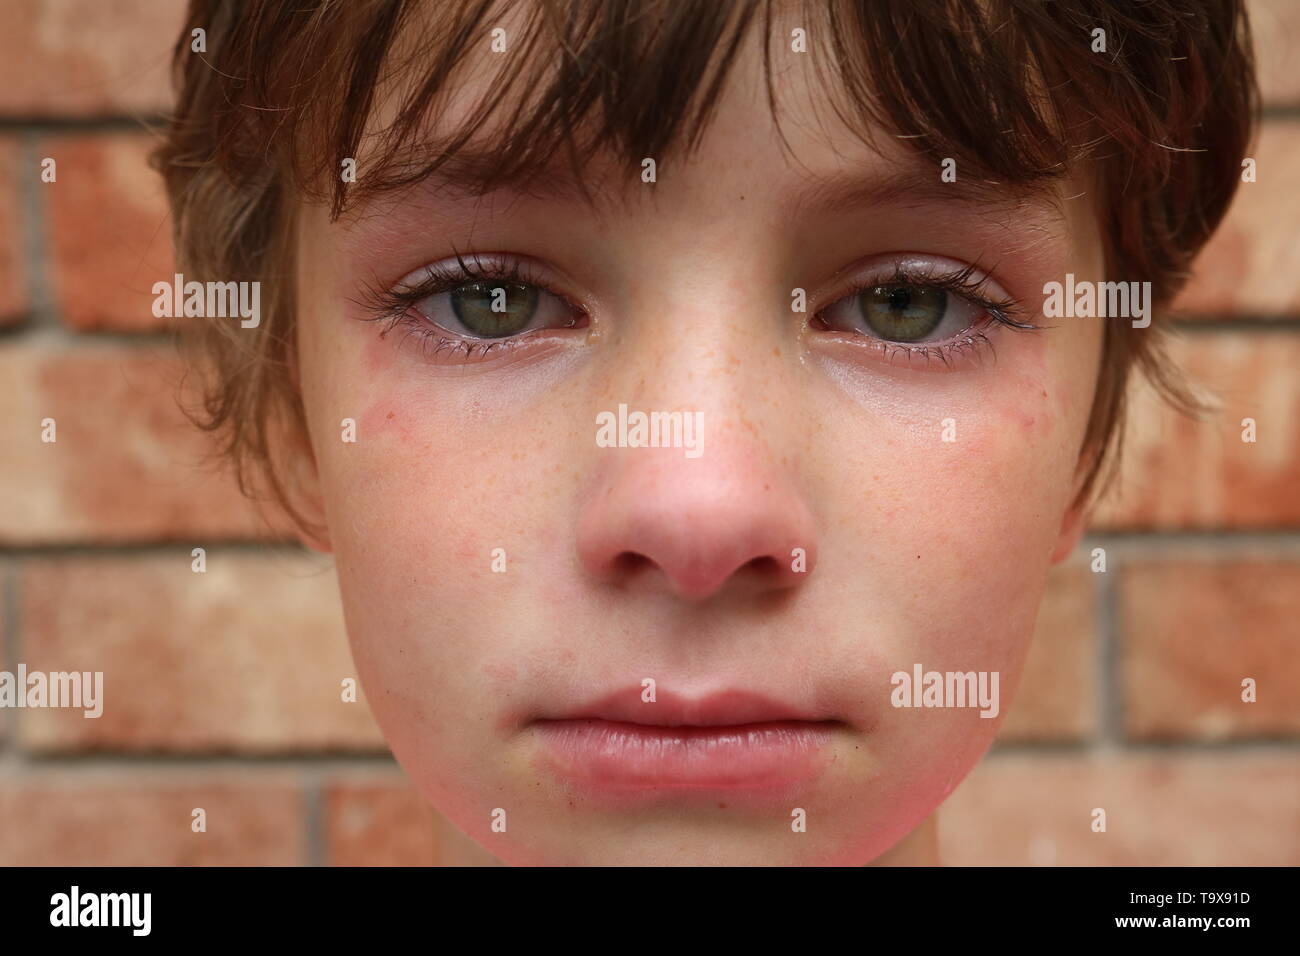 Portrait d'avoir des troubles de l'enfant avec la peau couperosée rouge et gros yeux verts Banque D'Images